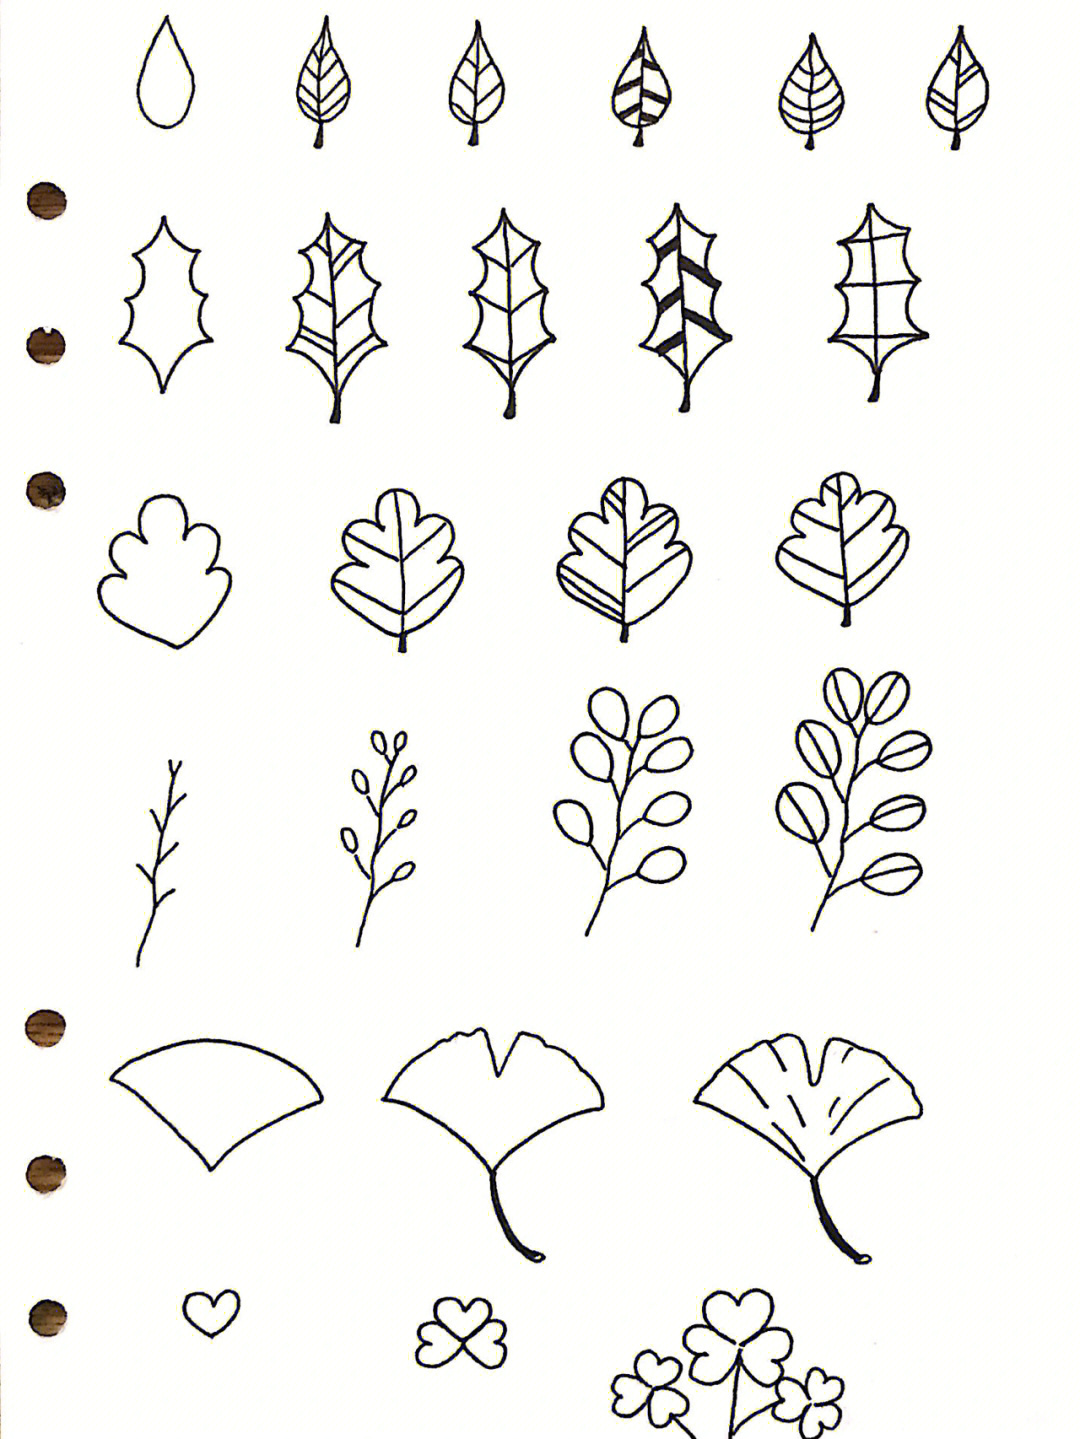 各种树叶简笔画及名称图片